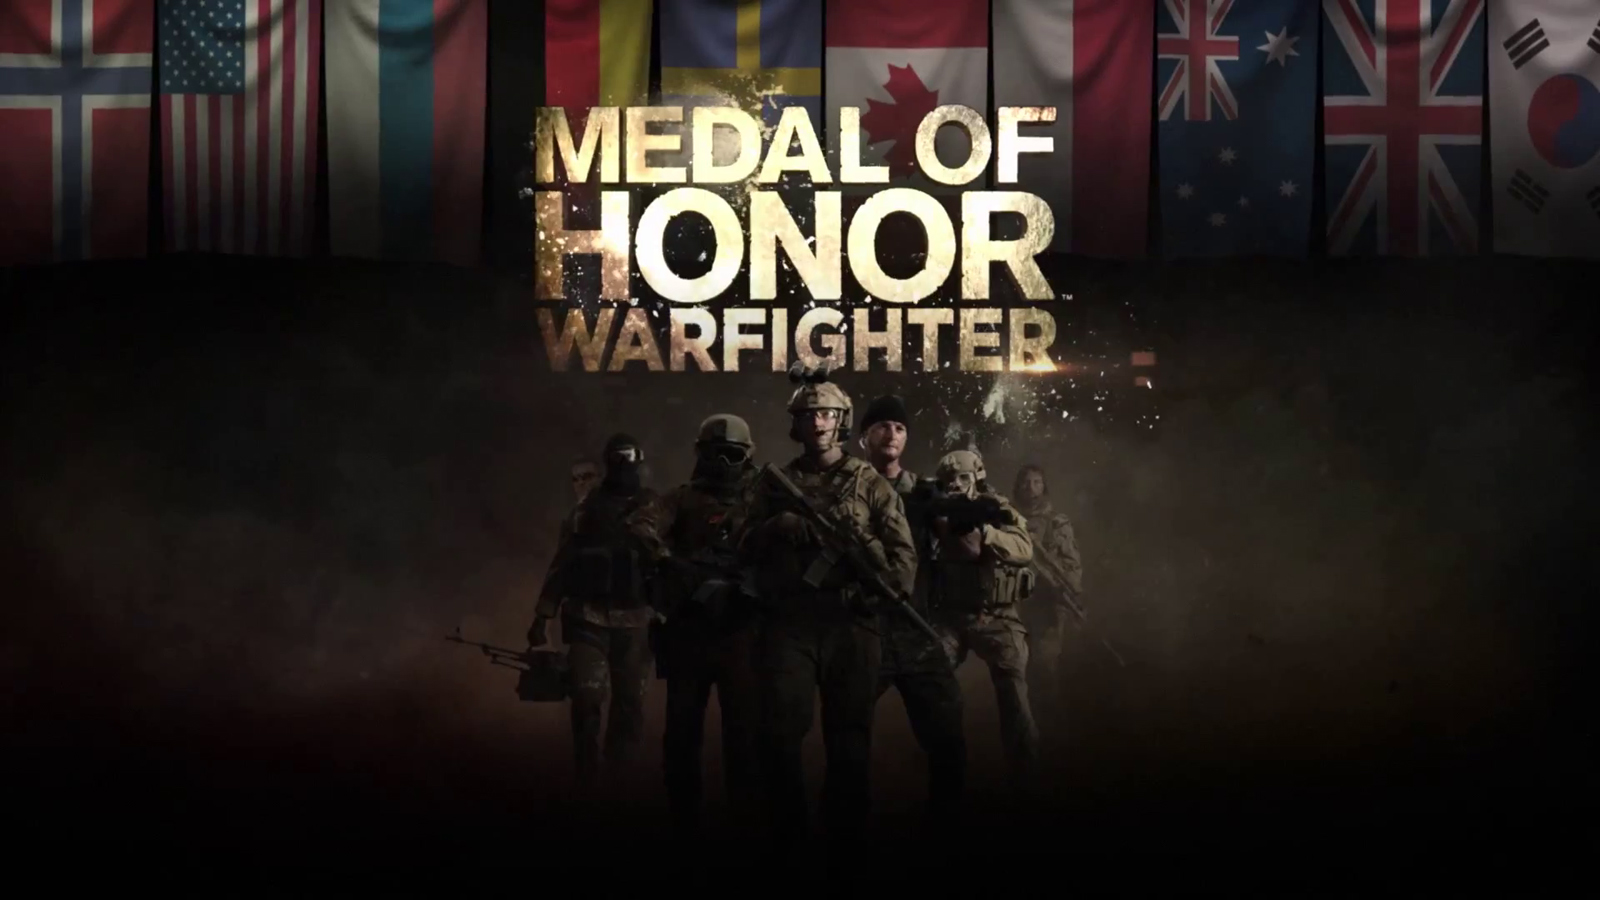 68+] Medal Of Honor Wallpaper - WallpaperSafari